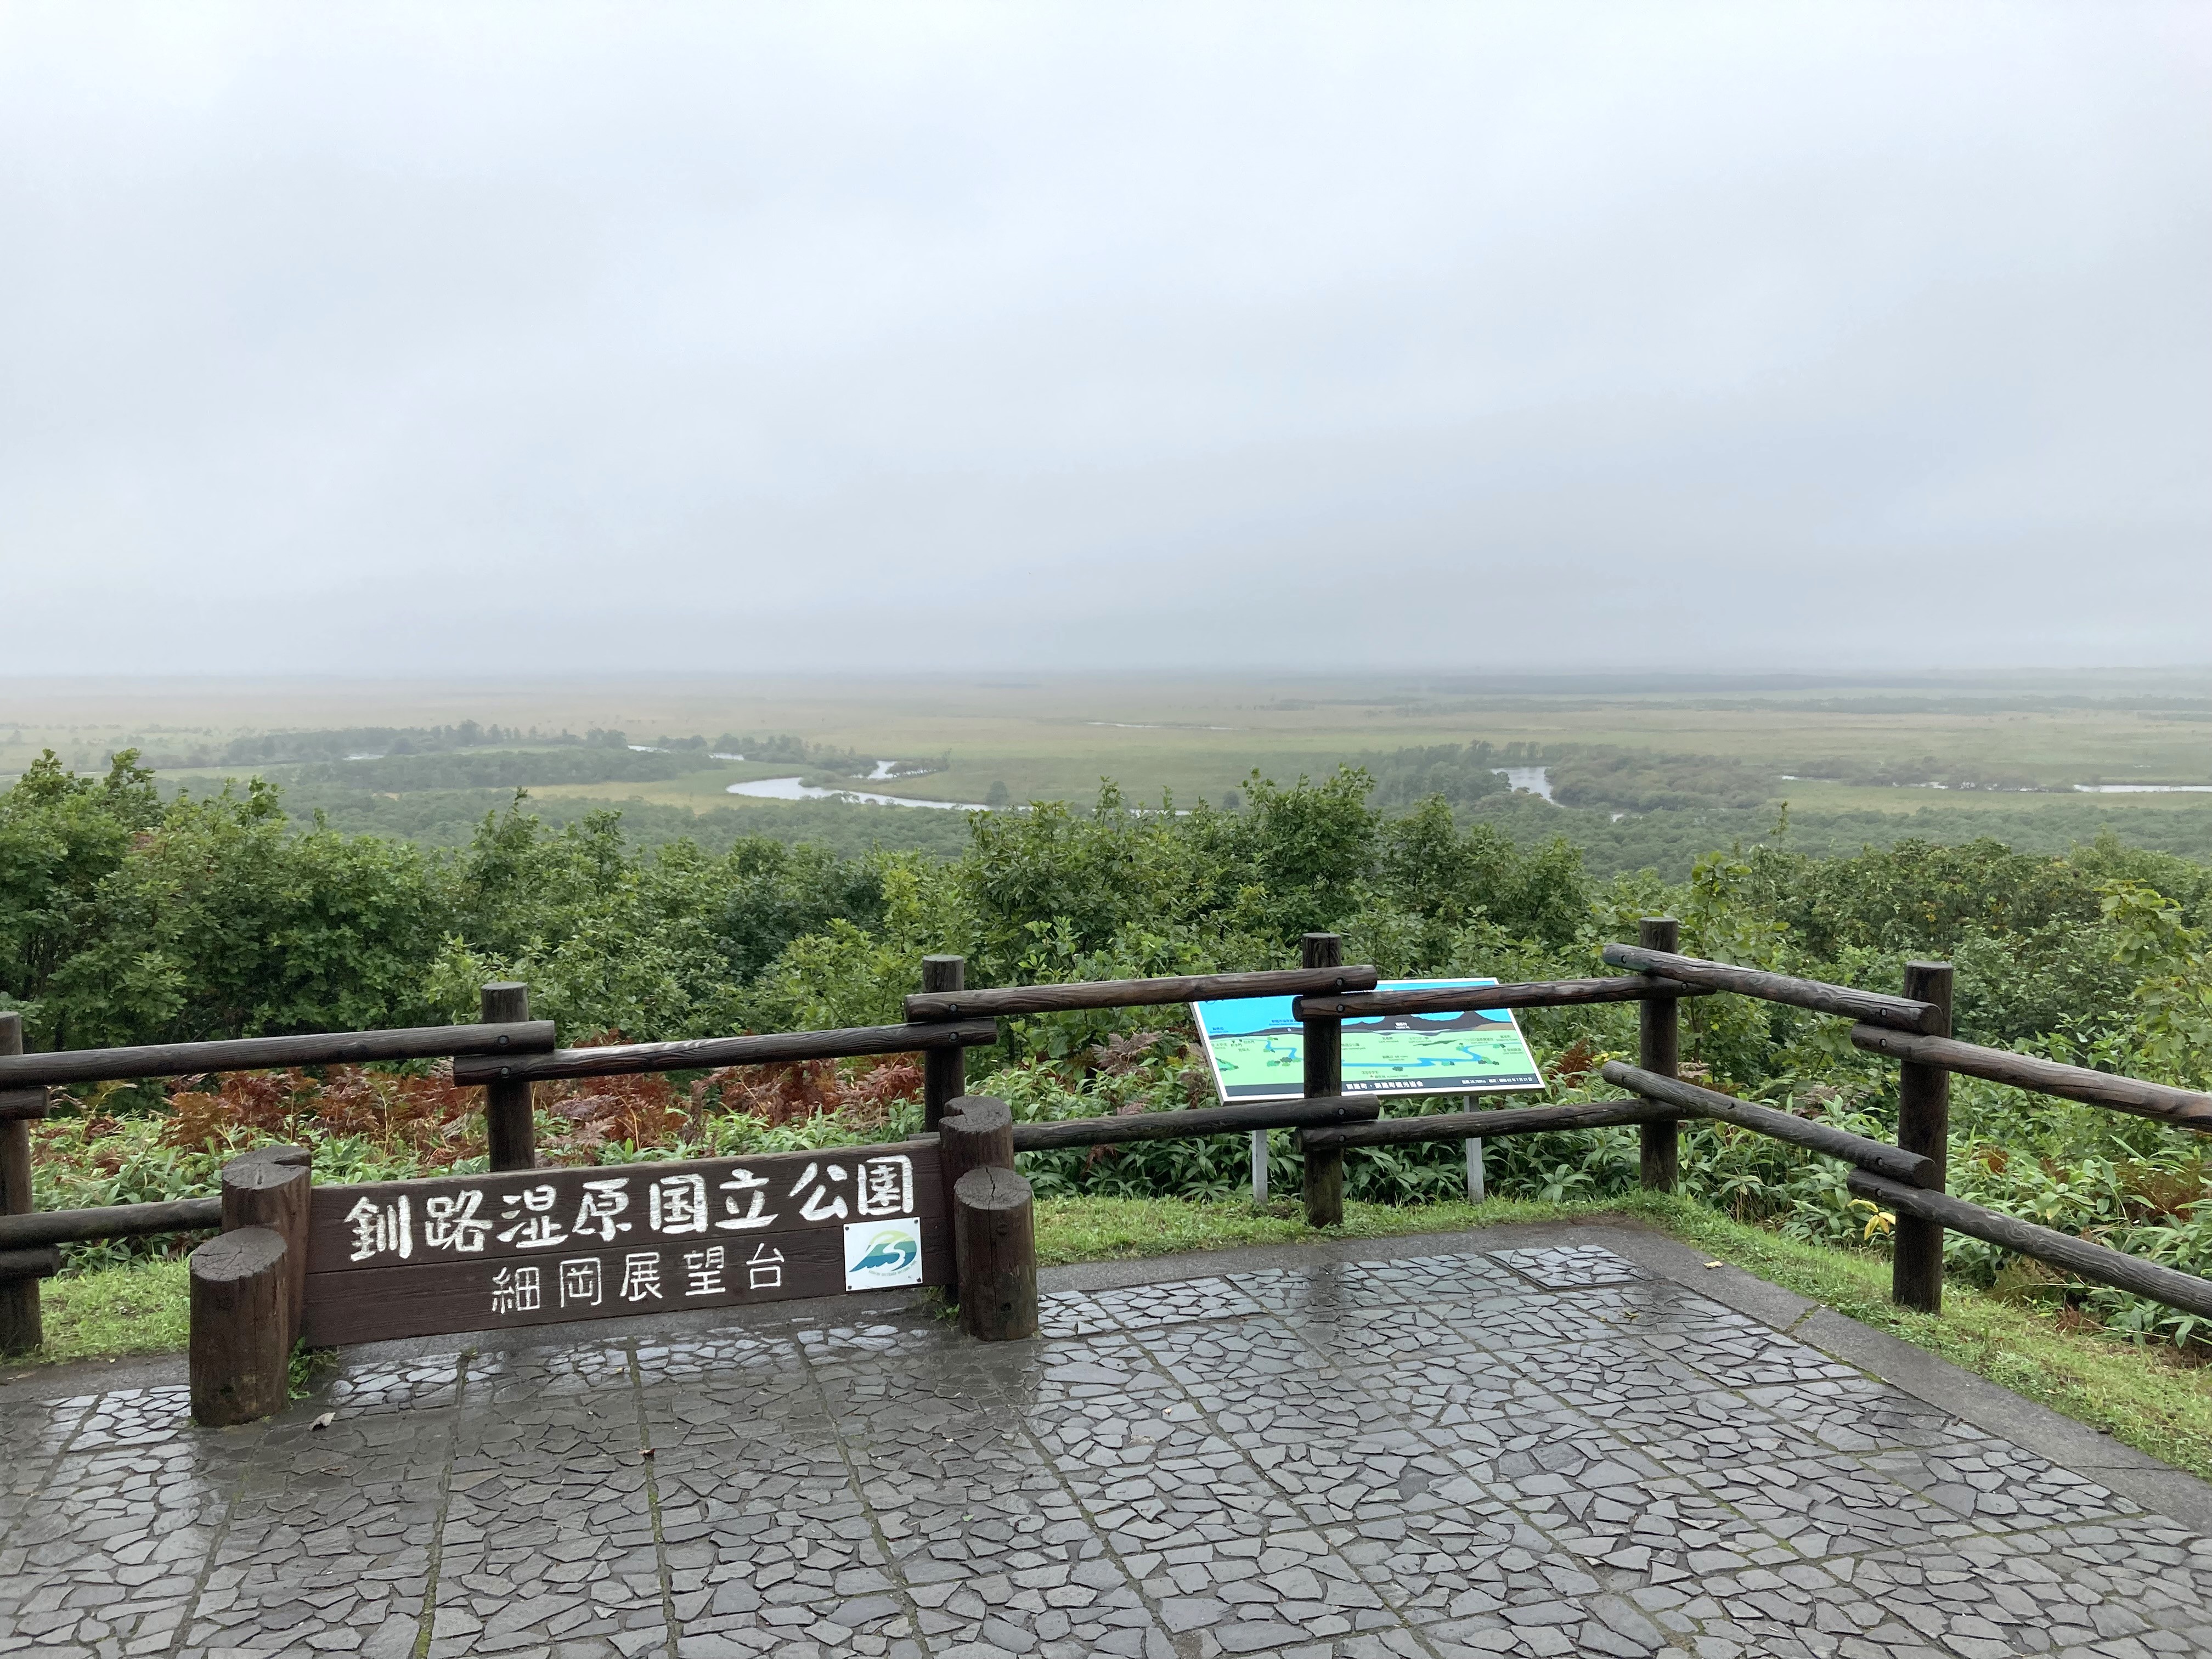 釧路湿原国立公園（くしろしつげんこくりつこうえん）、日本最大の湿原と壮大な蛇行河川、それを育む森。釧路湿原国立公園は、北海道東部を流れる釧路川とその支流を抱く日本最大の釧路湿原及び湿原を取り囲む丘陵地からなります。手つかずの広大な水平的景観はこの地の何よりの魅力です。また、国の特別天然記念物のタンチョウをはじめ多くの動植物の貴重な生息地となっています。釧路湿原は、明治以降、開拓が困難なため、役にたたない土地と考えられてきましたが、戦後の食料不足による農地開発や市街地開発及び丘陵地伐採などにより、湿原面積の減少や乾燥化が進みました。それに対し地元の研究者や自然保護団体が、湿原の価値を見直すための運動を続けた結果、その価値が国際的に認められ、昭和55年に日本で最初のラムサール条約登録湿地となり、7年後には国立公園に指定されました。湿原を中心とする初の国立公園の誕生は、かつて「不毛の大地」と呼ばれた湿原の自然環境に対する価値が、地域の活動を通して見出された結果、日本の国立公園史に新たな歴史を刻んだ出来事といえます。釧路湿原は、太平洋の海岸線から最深部では約40km内陸に入り込んだ形を見せていますが、この広大な土地は、太古の時代には海だったのです。海が後退して湿原へと変わる過程で多くの湖沼が点在したことは上の図のとおりですが、この名残が現在も湿原の東側に見られる塘路湖、シラルトロ湖、達古武湖です。これらの湖沼は、海が後退した後も水をたたえたまま残った湖であることから、「海跡湖（かいせきこ）」と呼ばれています。また、湿原は丘陵・台地に囲まれていますが、これはかつて海だった時代の海食崖と推測されており、釧路湿原の地形の特徴のひとつになっています。釧路湿原の東側に湖沼が集まっているのは、地殻運動によるものといわれています。湿原一帯では、東側の地盤が沈下し、西側では隆起する傾向があるため、低くなった東側に水が溜まって湖沼ができたのです。釧路川が同様に湿原の東側を流れているのも、湿原の地盤の"西高東低"傾向によるものです。釧路湿原国立公園は、他の地域では既に喪失してしまっている平野部の原始的な自然環境が保存されており、自然性の高い広大な水平的景観は、我が国では他に類例のない特異な景観となっています。